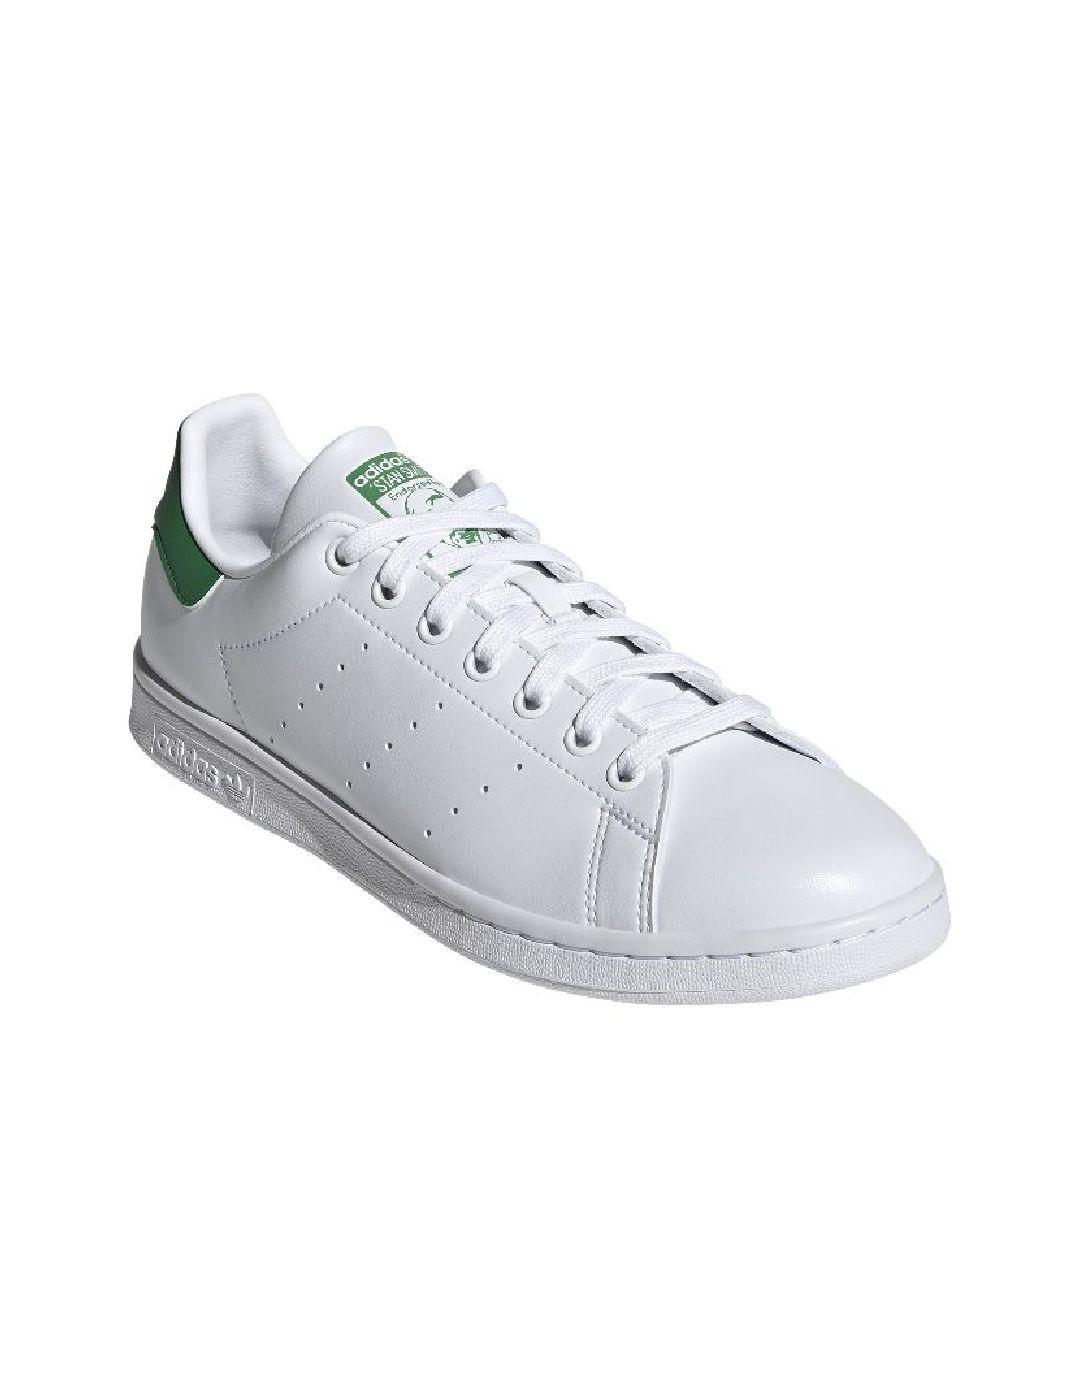 Zapatillas Adidas Stan Blanco/Verde